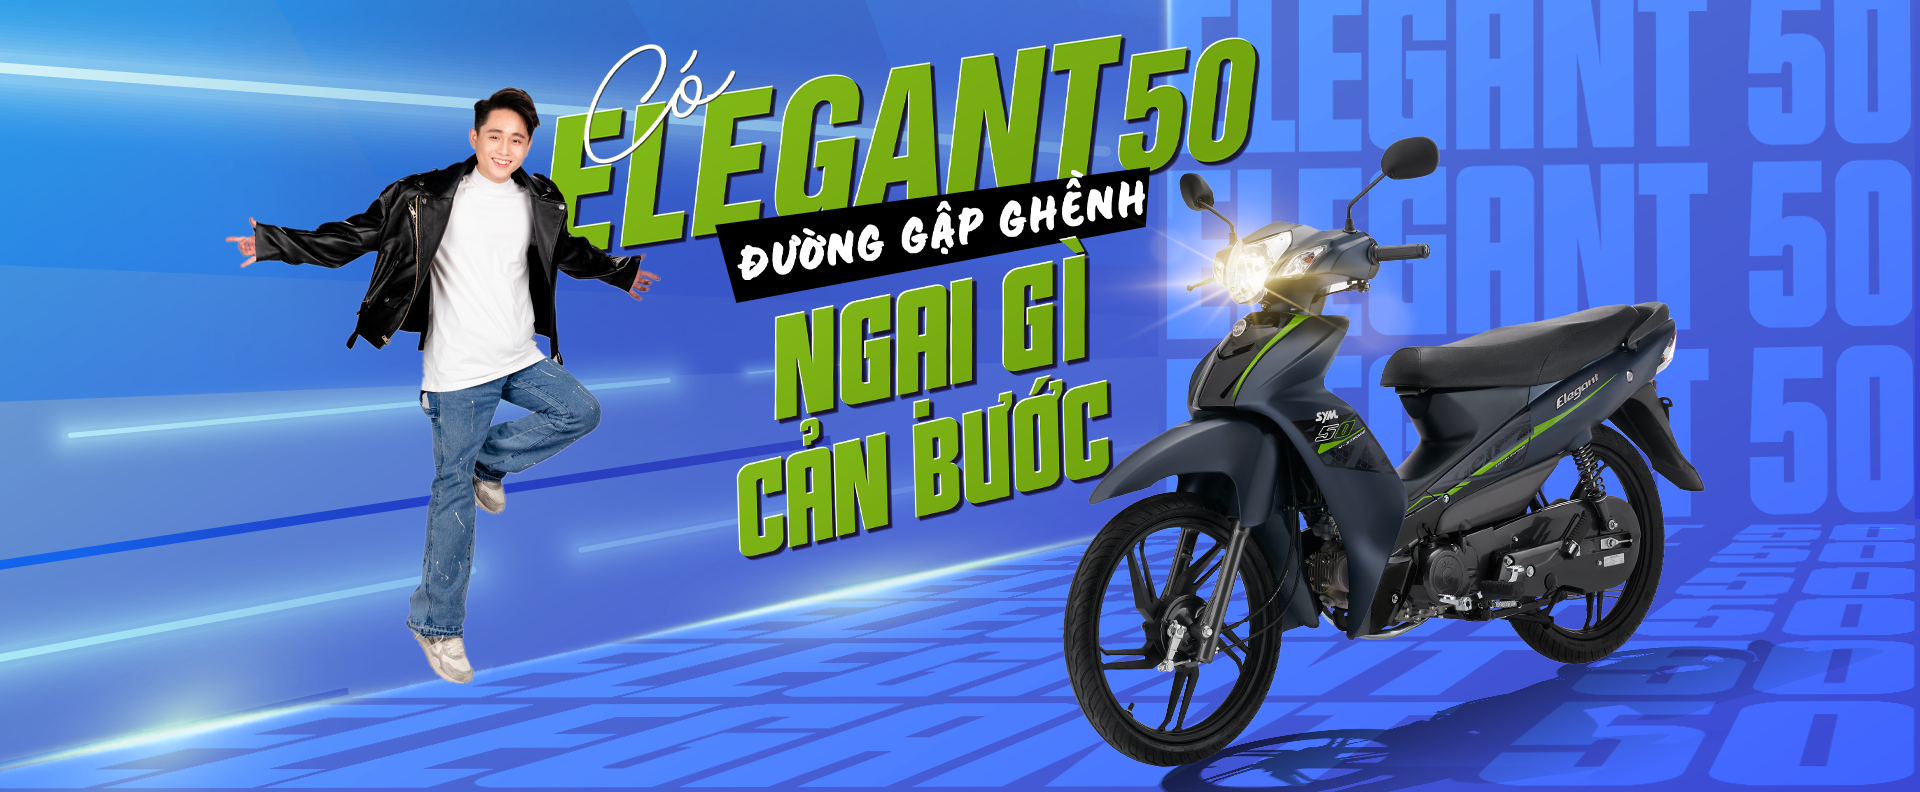 Xe Elegant 50cc dành cho học sinh  109461973